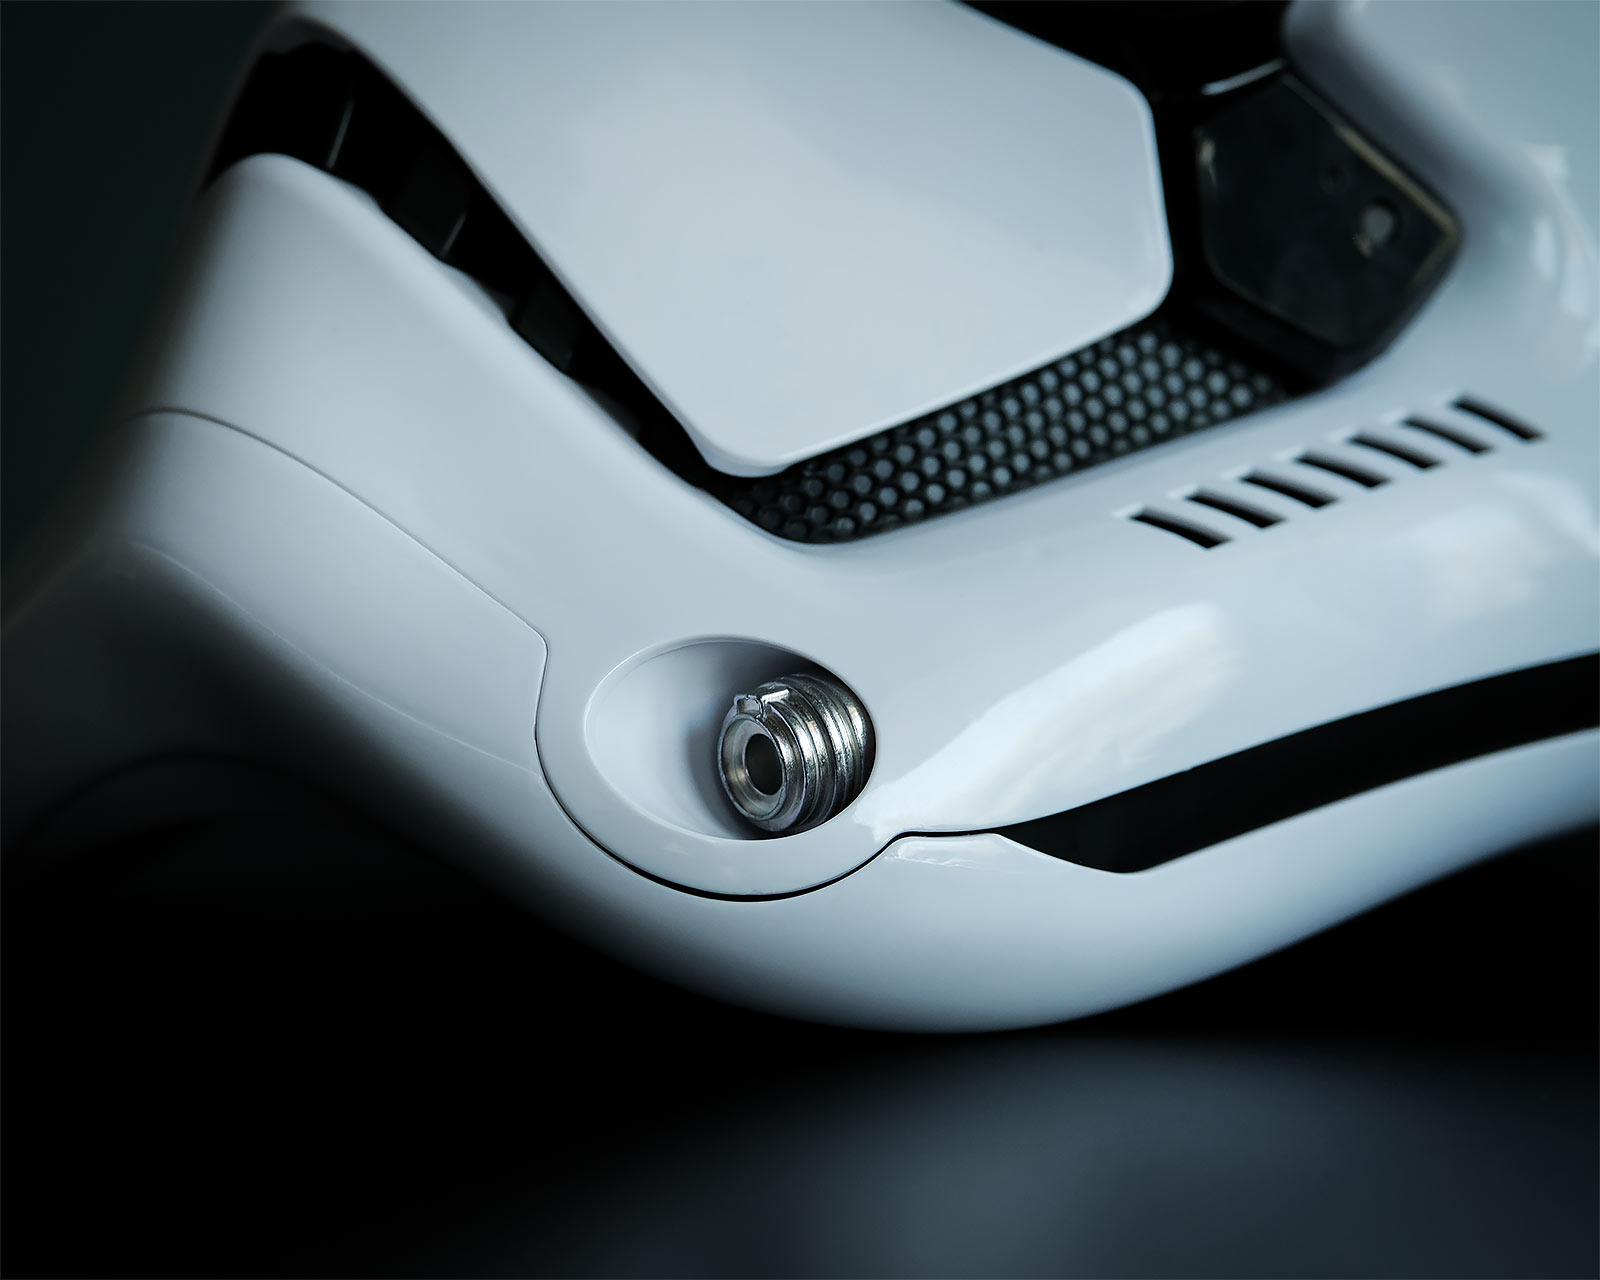 First Order Stormtrooper Helm Replik mit Stimmenverzerrer - Star Wars